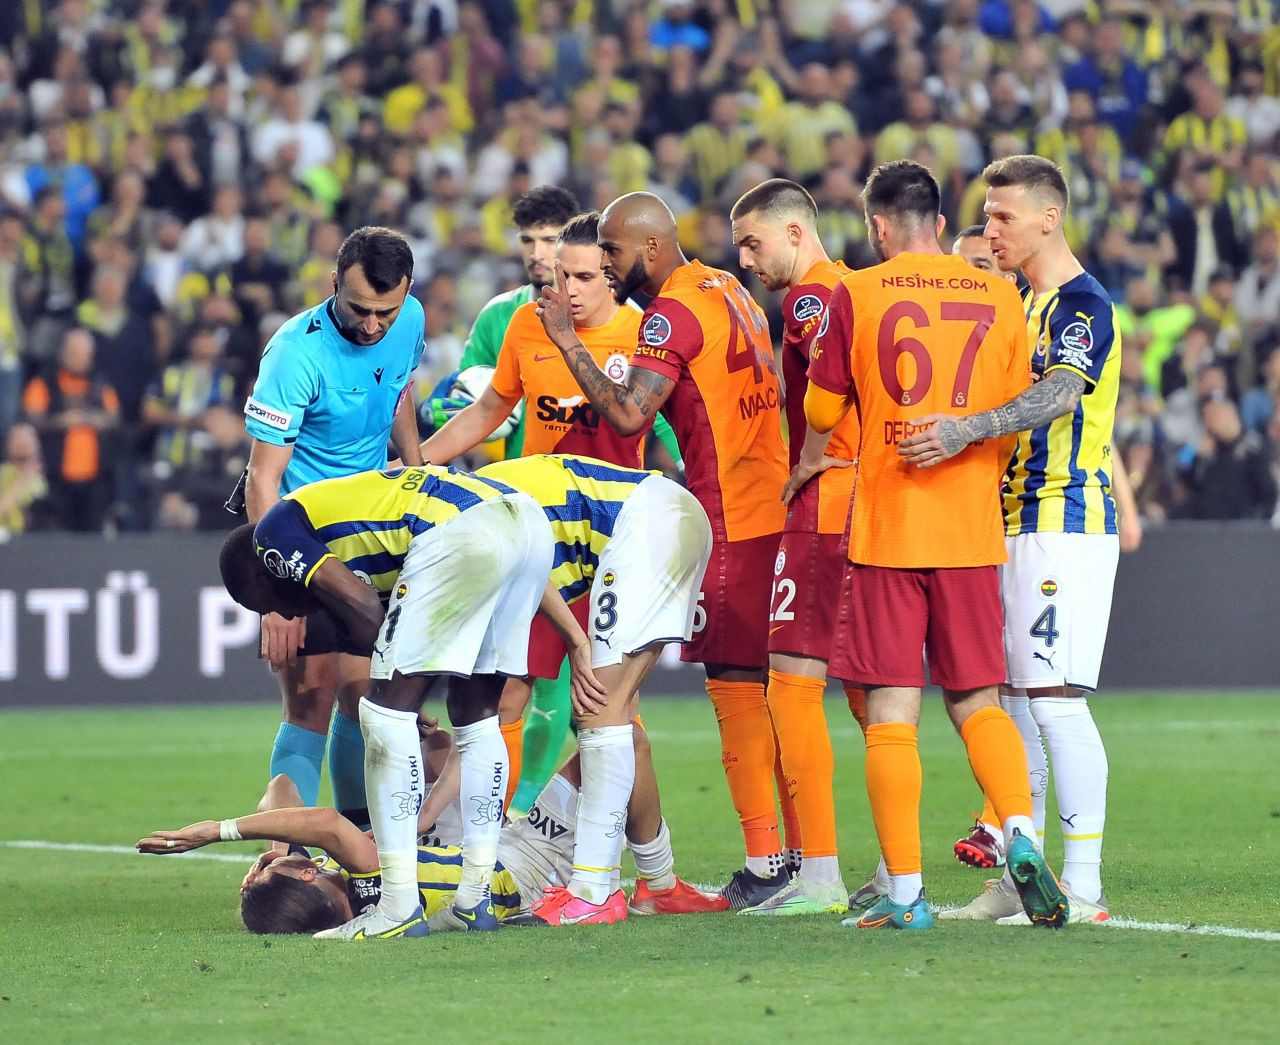 Fenerbahçe-Galatasaray derbisinde Arda Turan'ın görüntüsü sosyal medyada gündem oldu - Sayfa 2